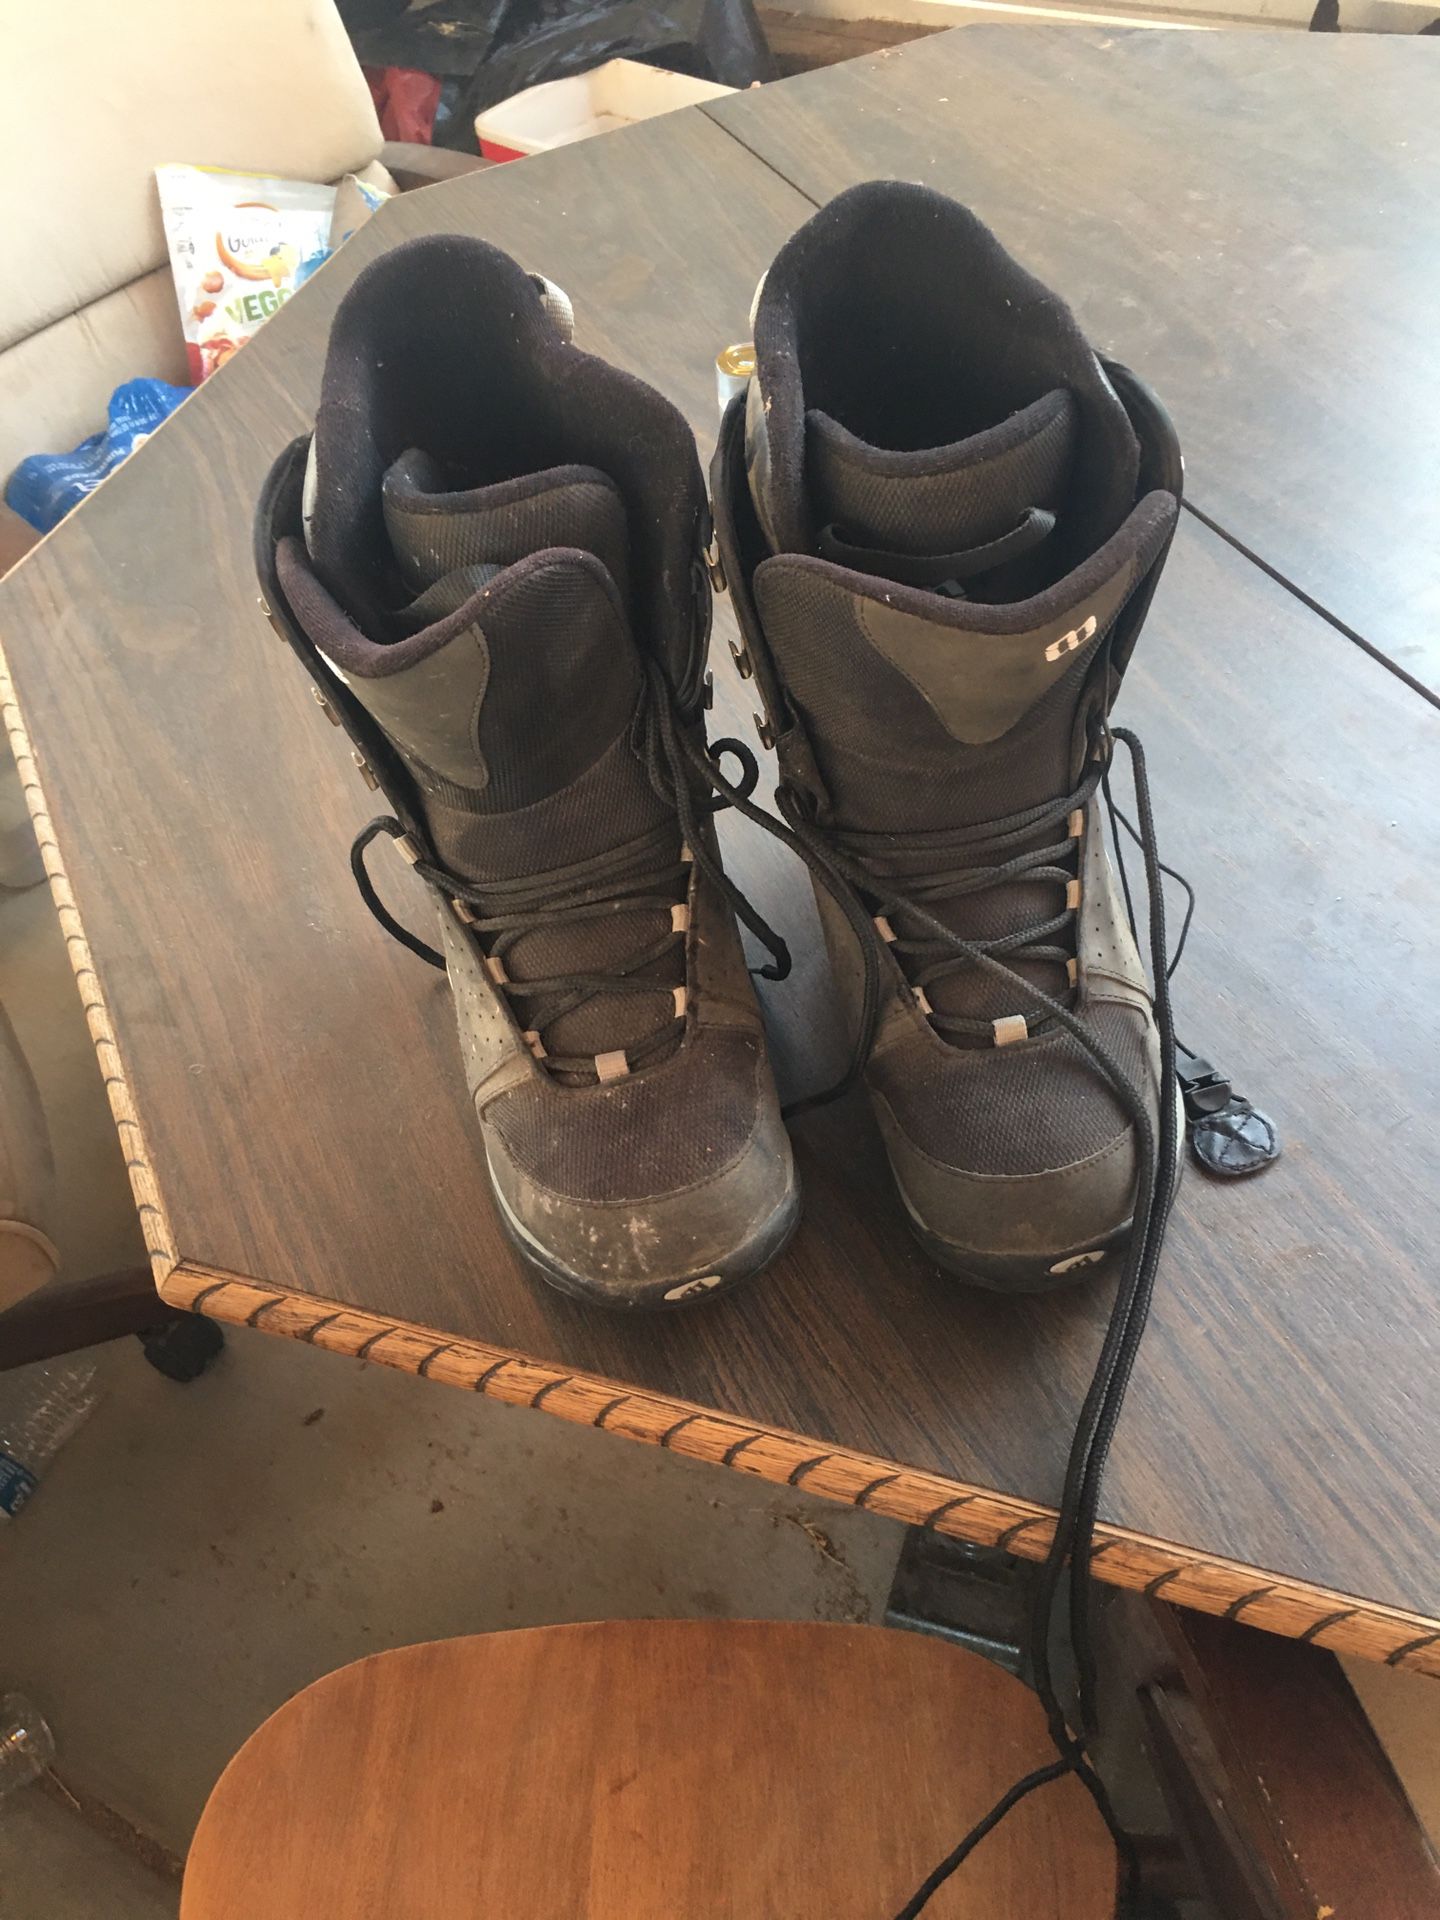 Snow boots men’s size 8